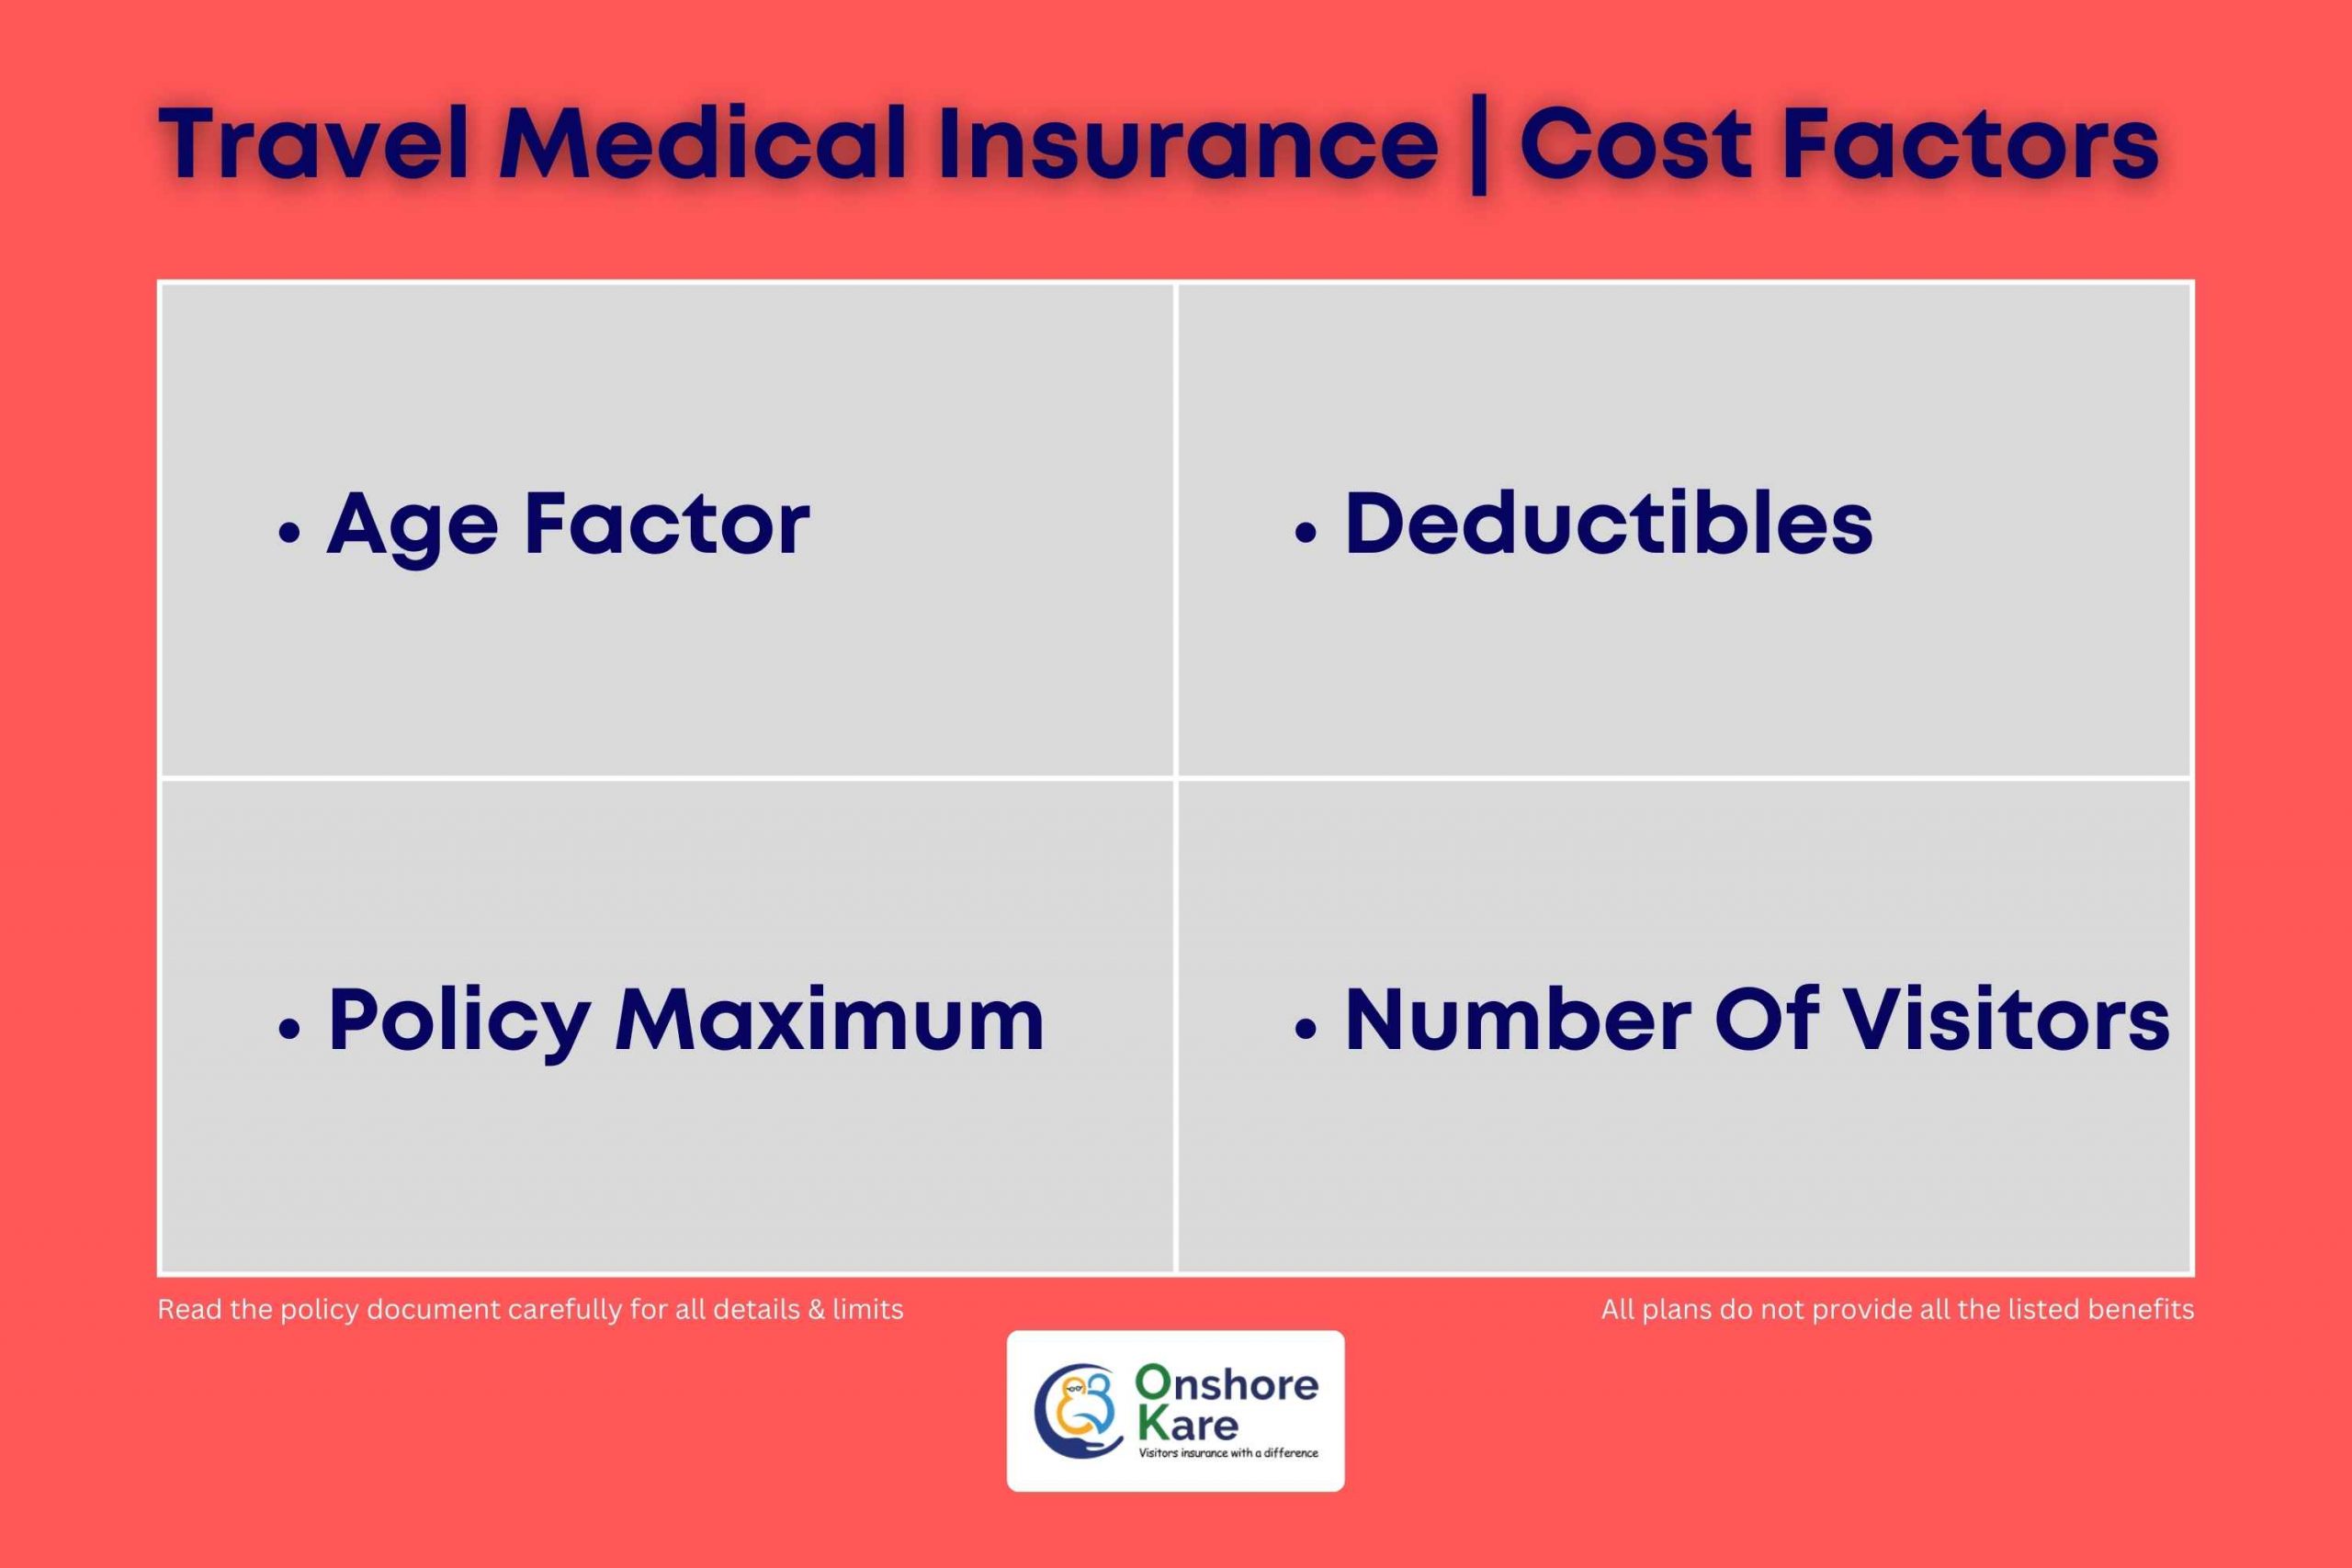 Travel Medical Insurance Cost Factors